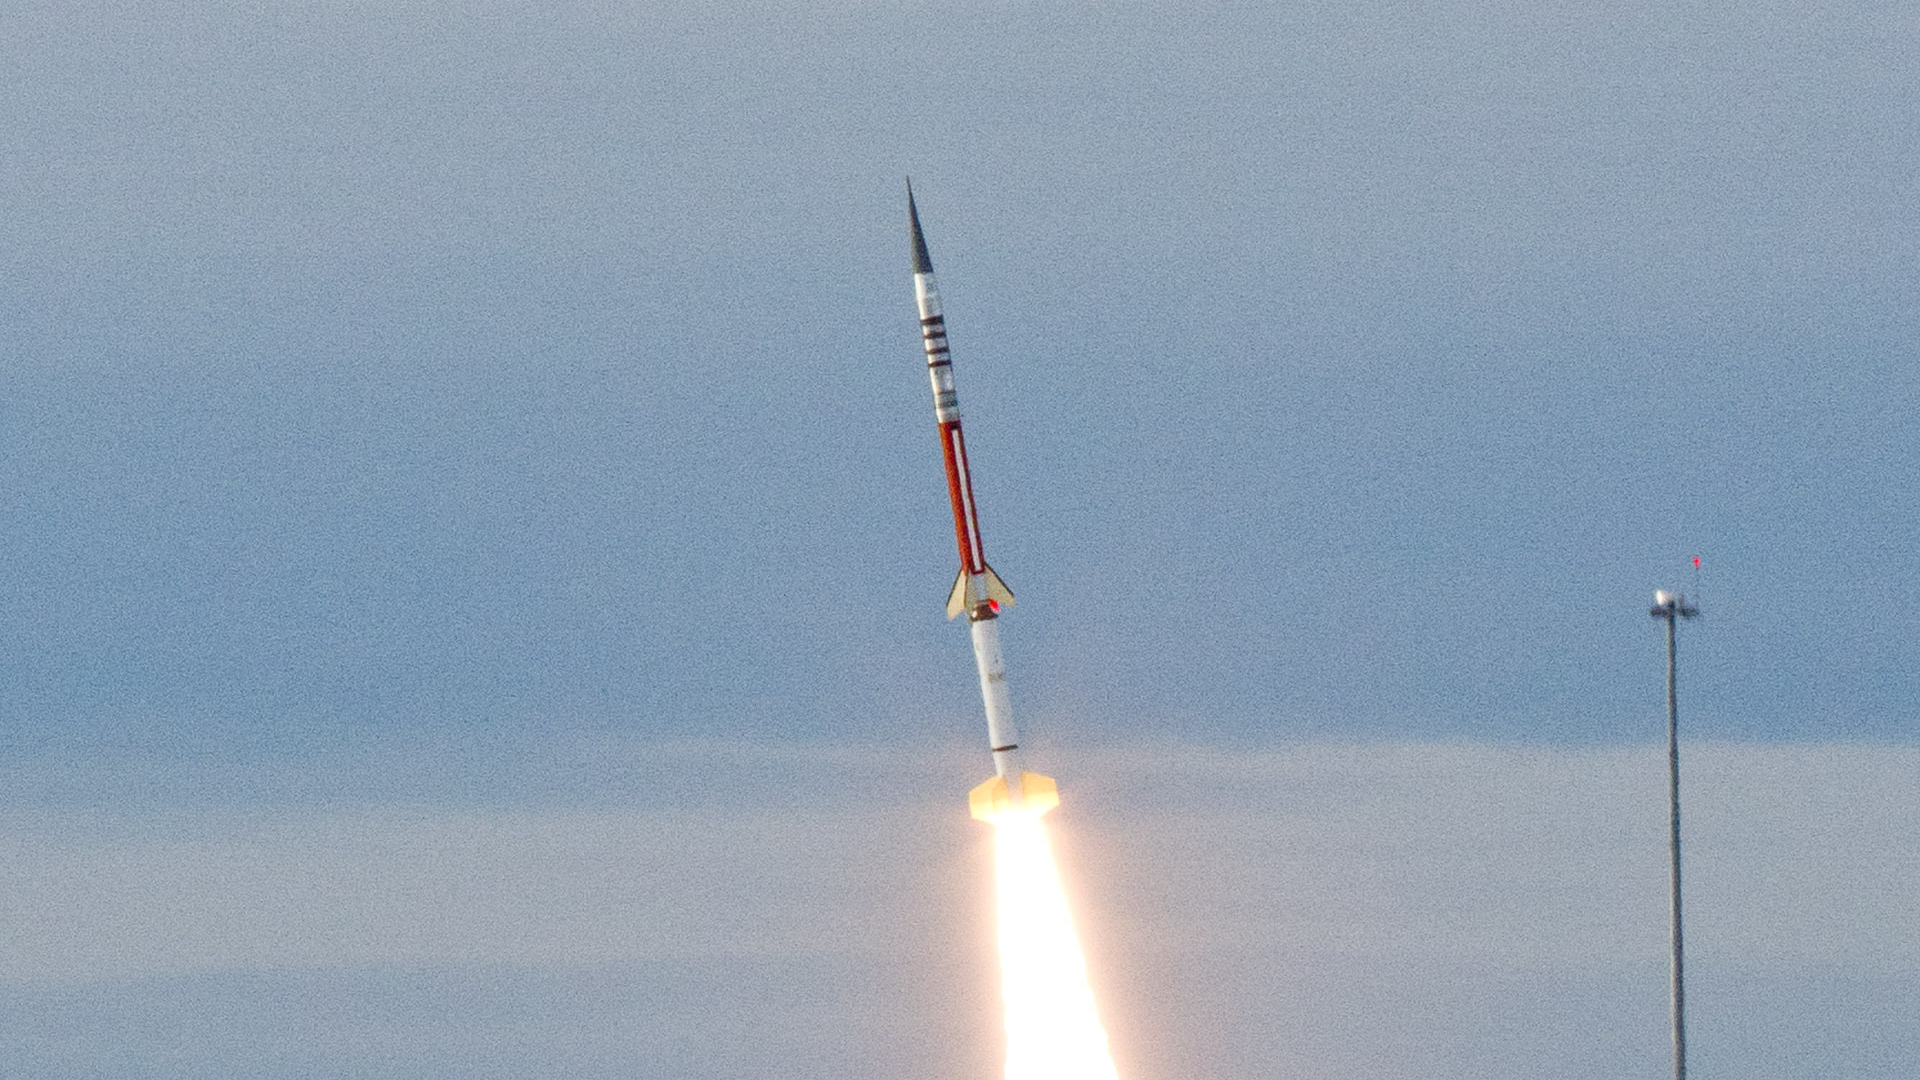 A suborbital sounding rocket launched at Wallops Flight Facility. Photo: NASA